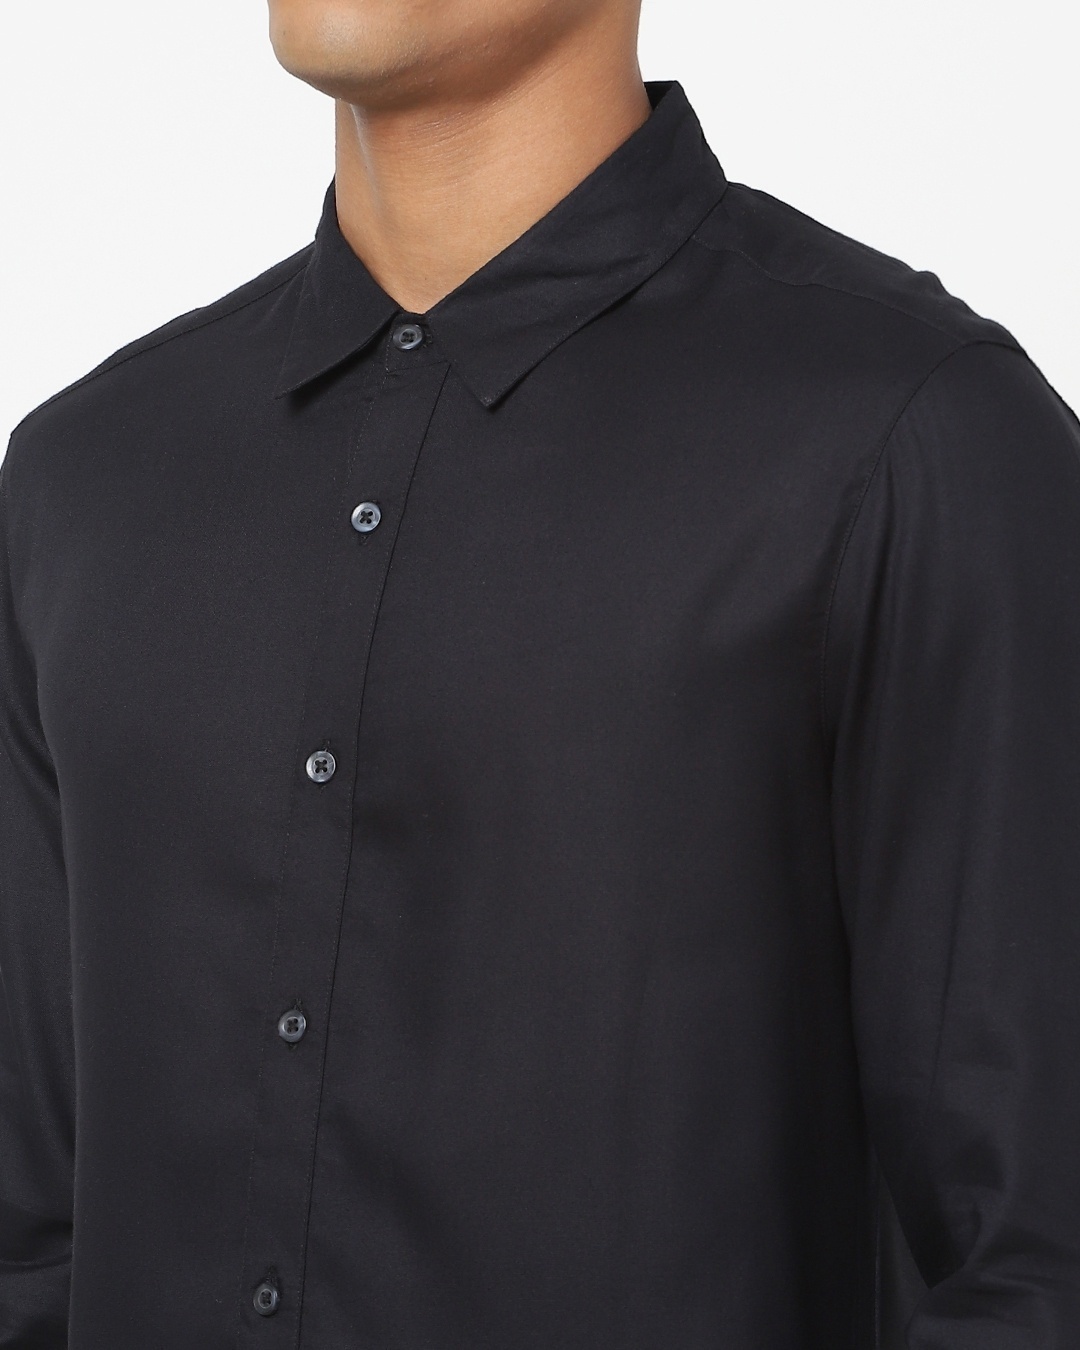 Buy Black Full Sleeve Shirt for Men black Online at Bewakoof